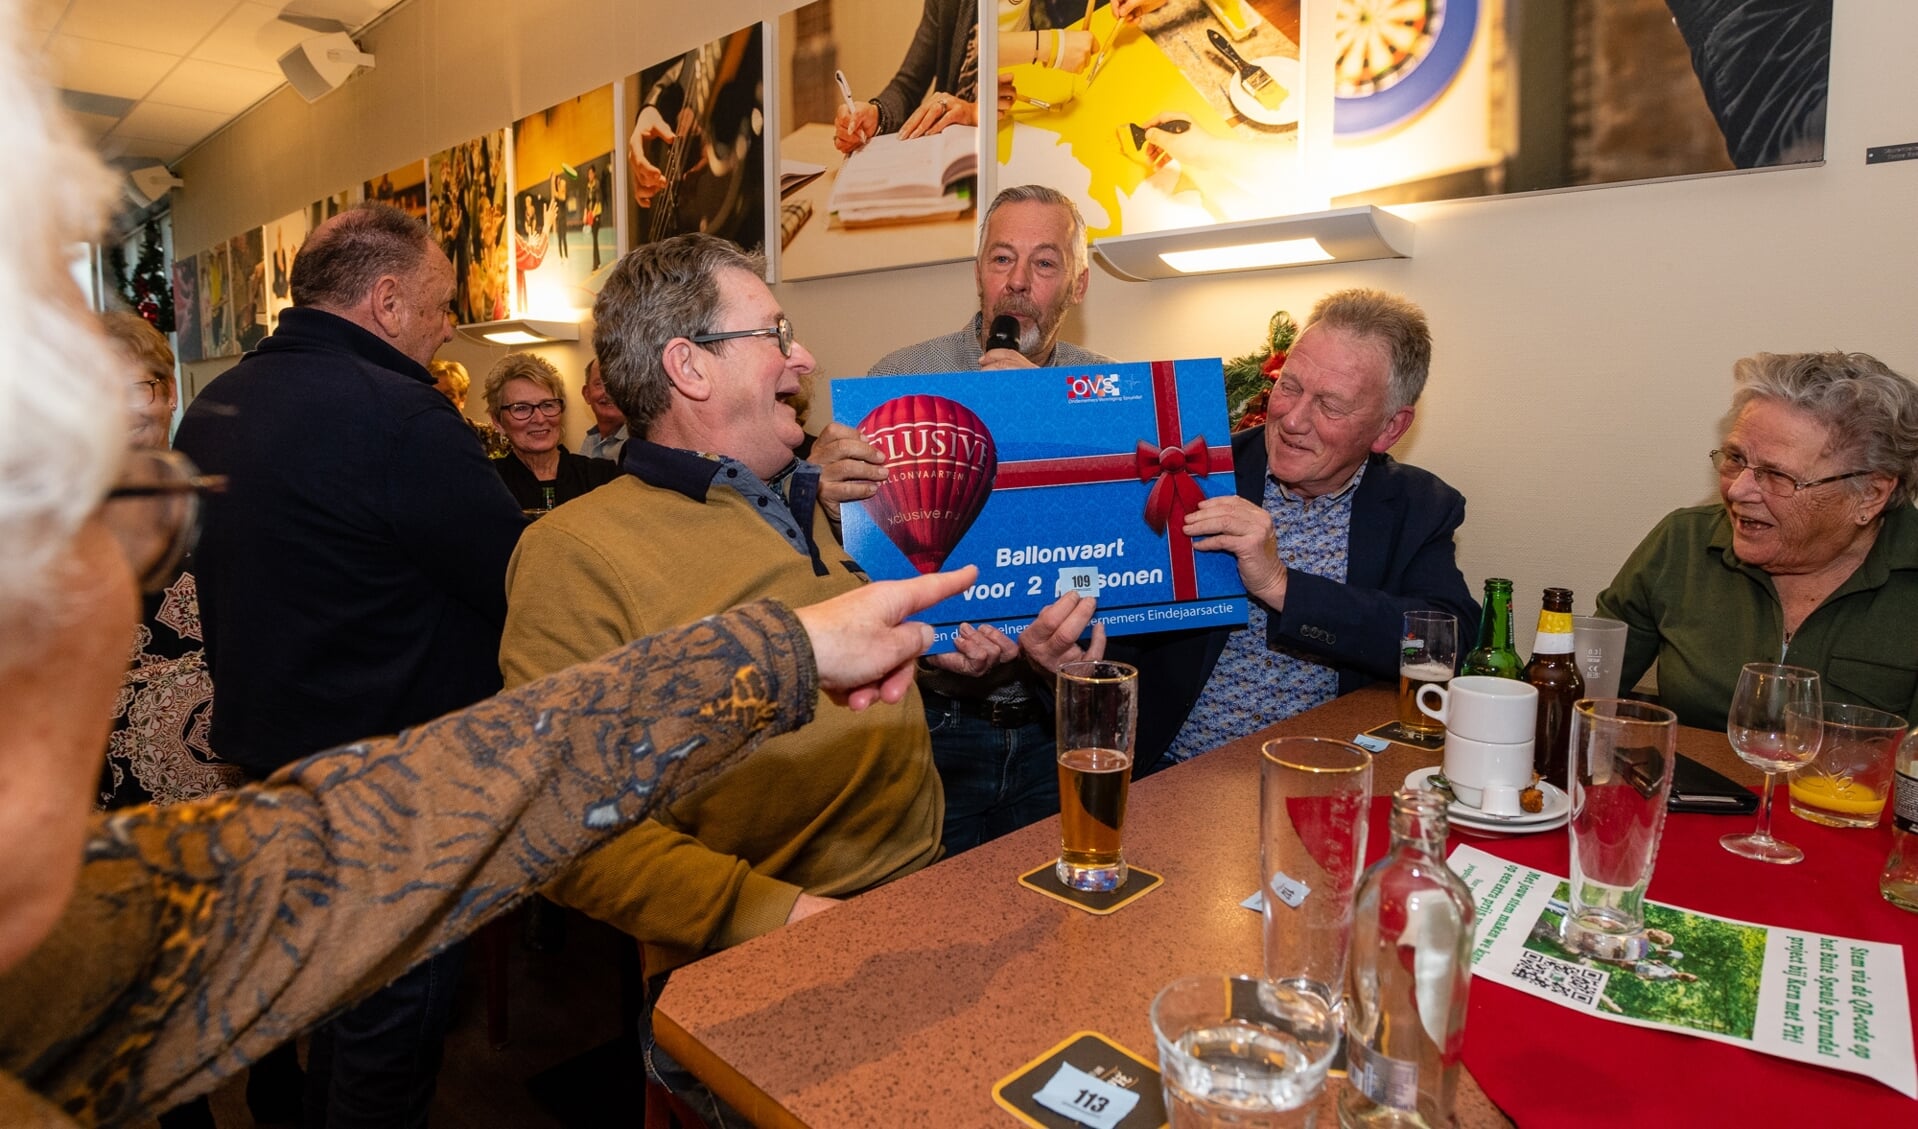 Frans en Wim Aarts ontvangen een cheque voor een ballonvaart voor twee personen.